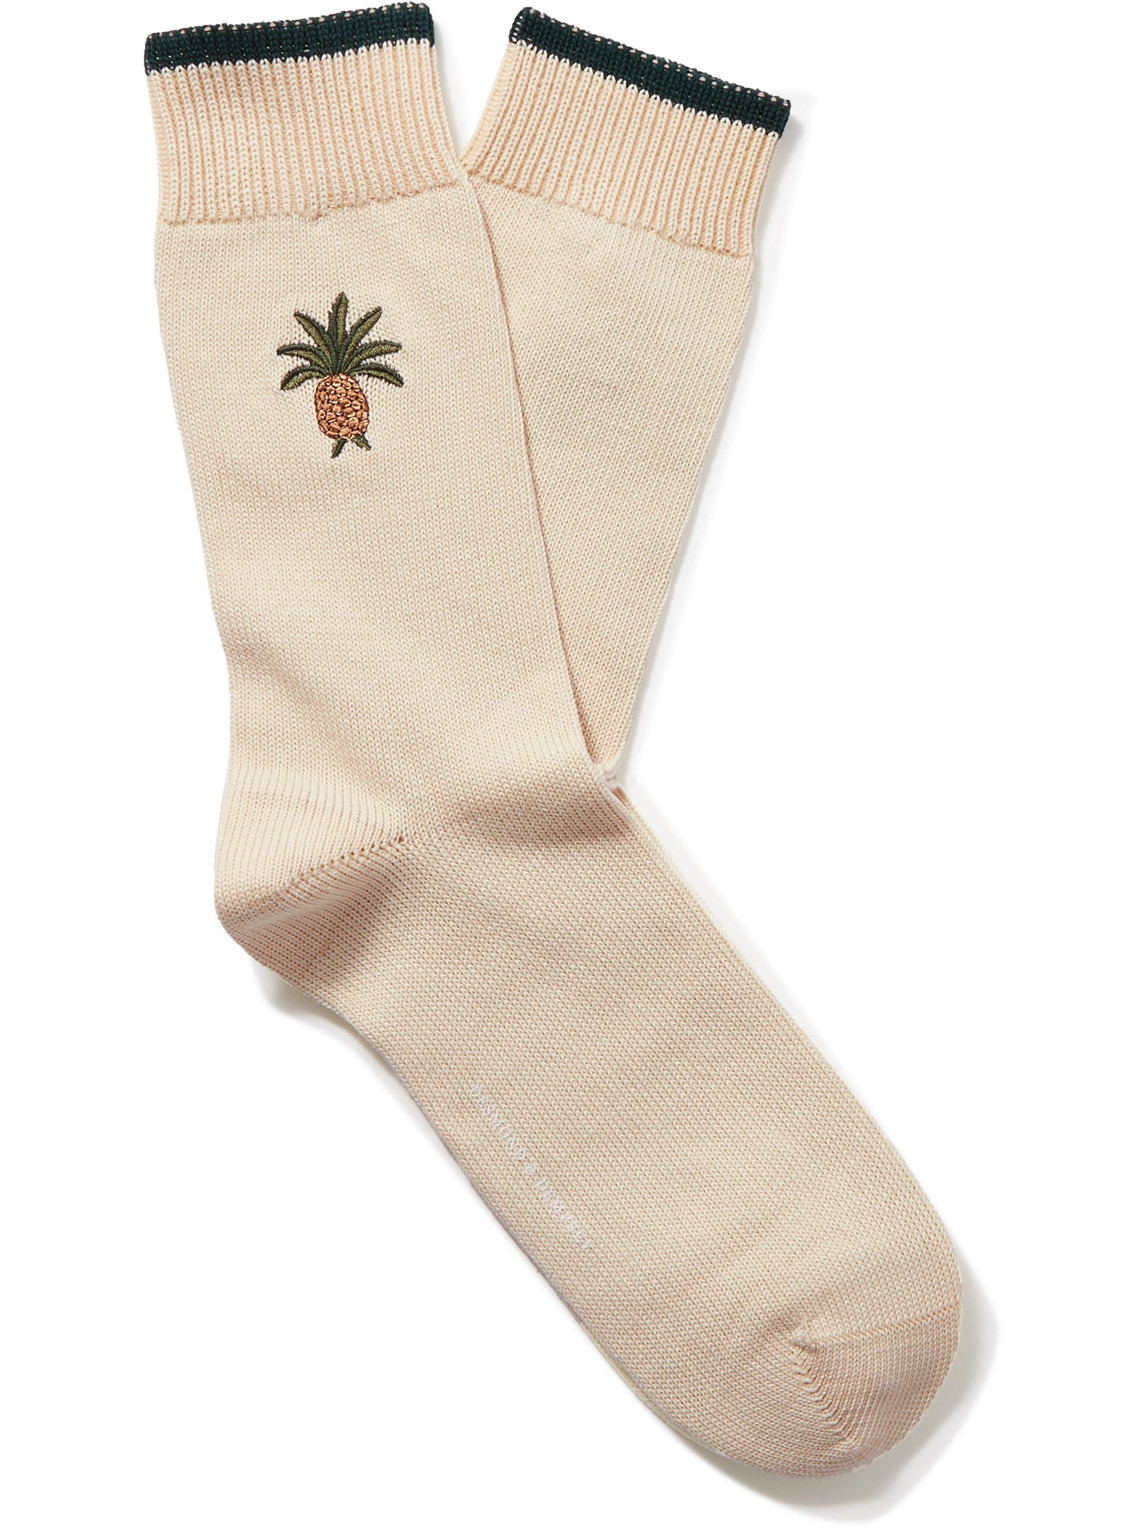 Desmond & Dempsey Howie Embroidered Stretch Cotton-blend Socks In Neutrals